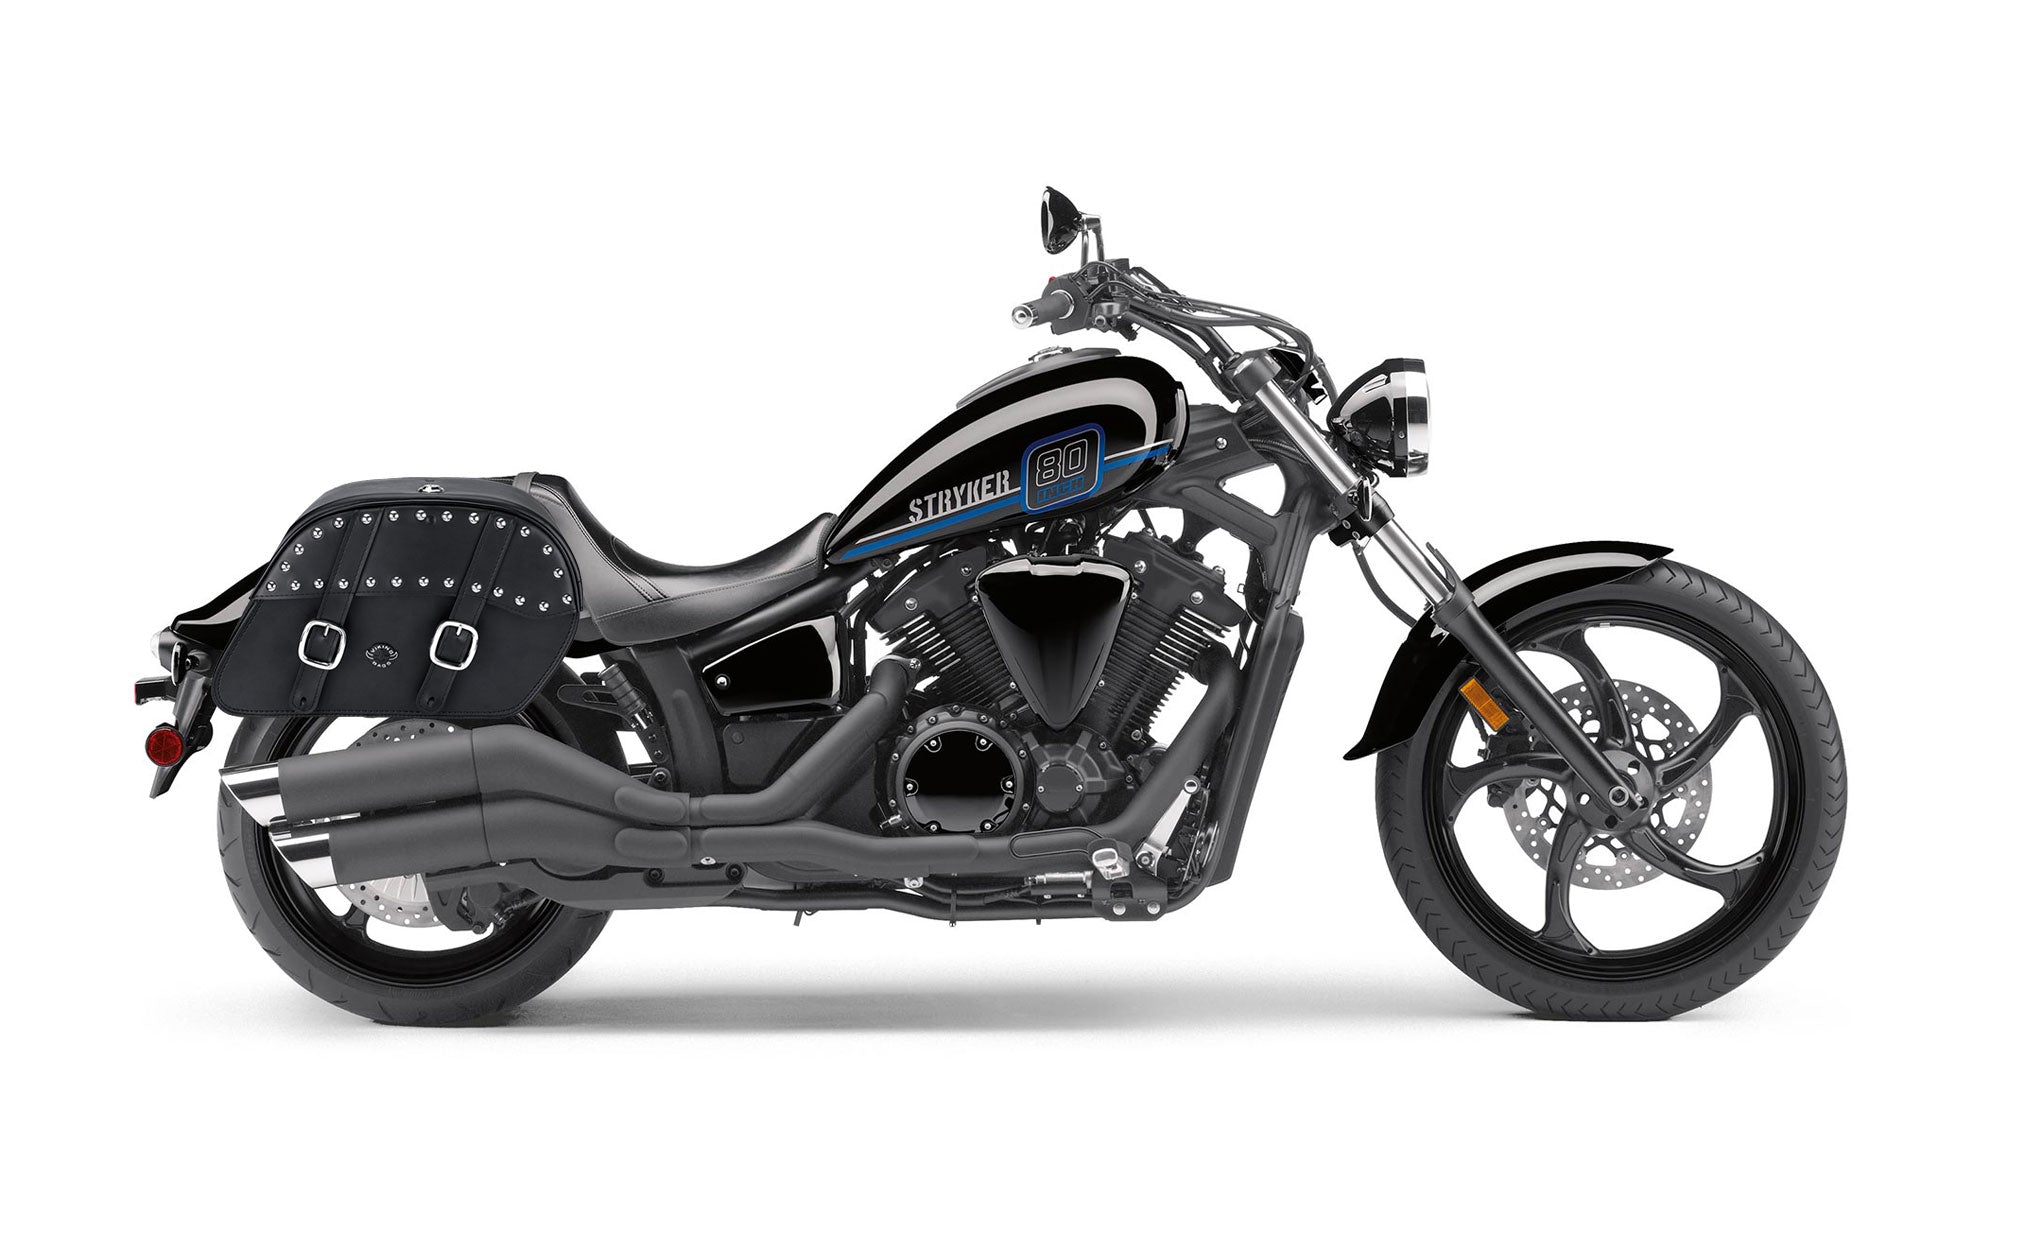 Viking Skarner Large Yamaha Stryker Leather Studded Motorcycle Saddlebags on Bike Photo @expand